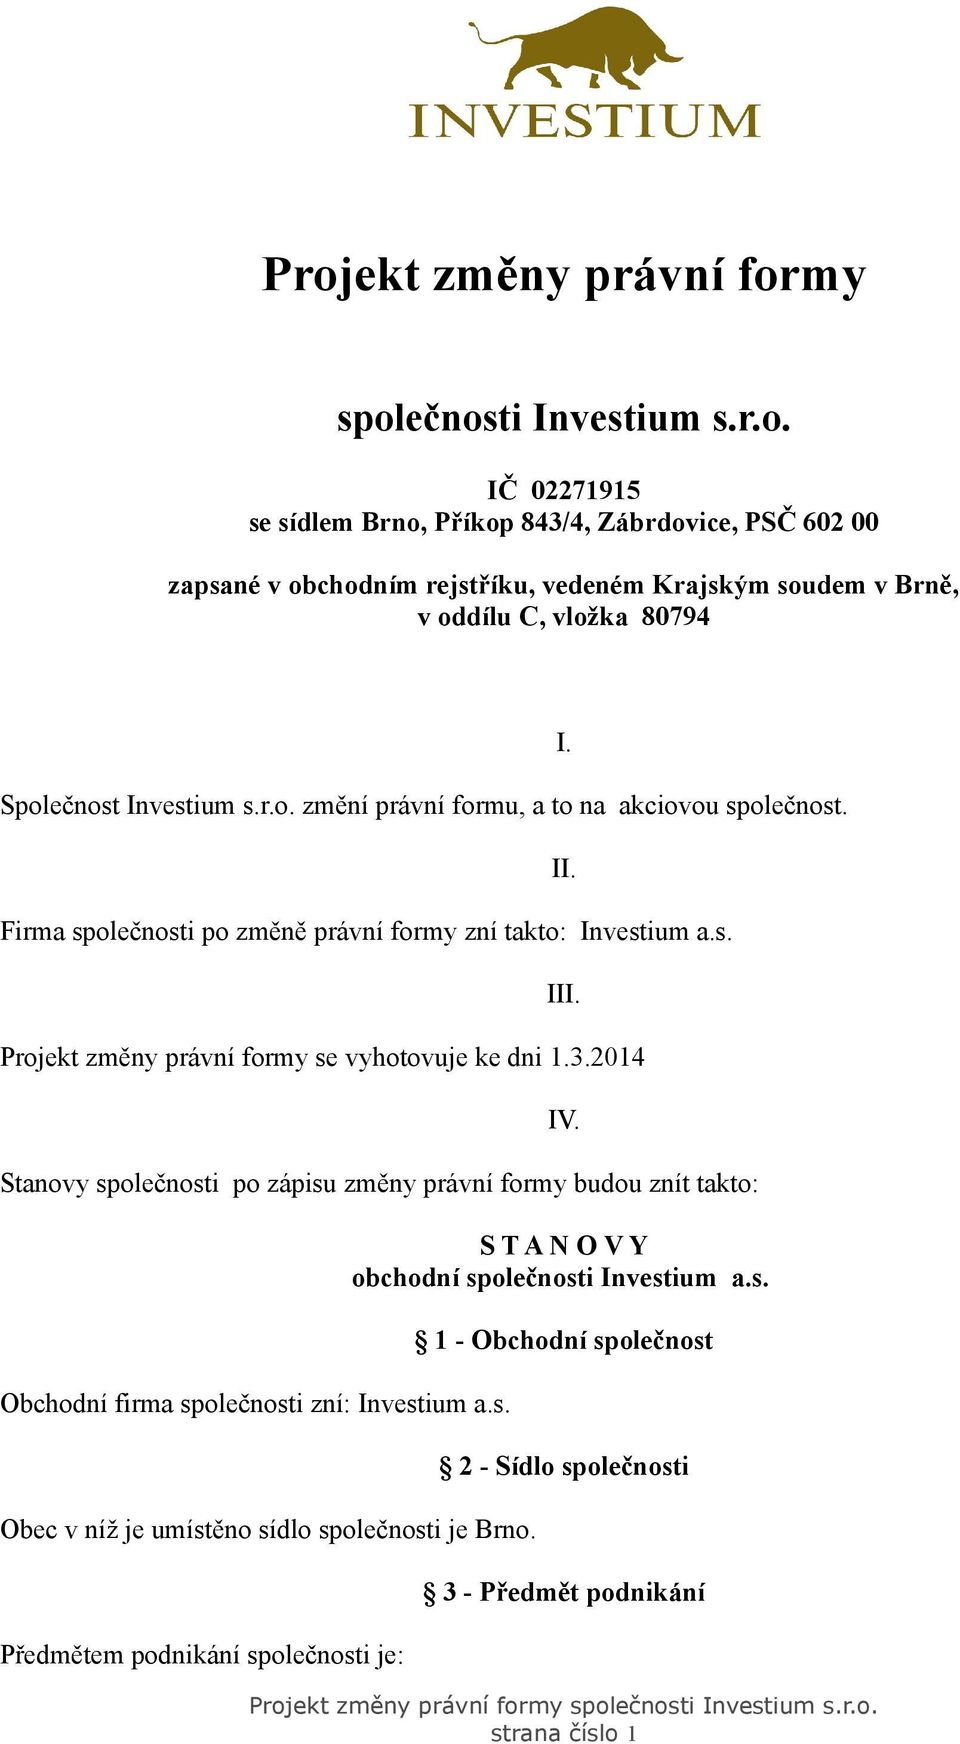 2014 Stanovy společnosti po zápisu změny právní formy budou znít takto: Obchodní firma společnosti zní: Investium a.s. Obec v níž je umístěno sídlo společnosti je Brno.